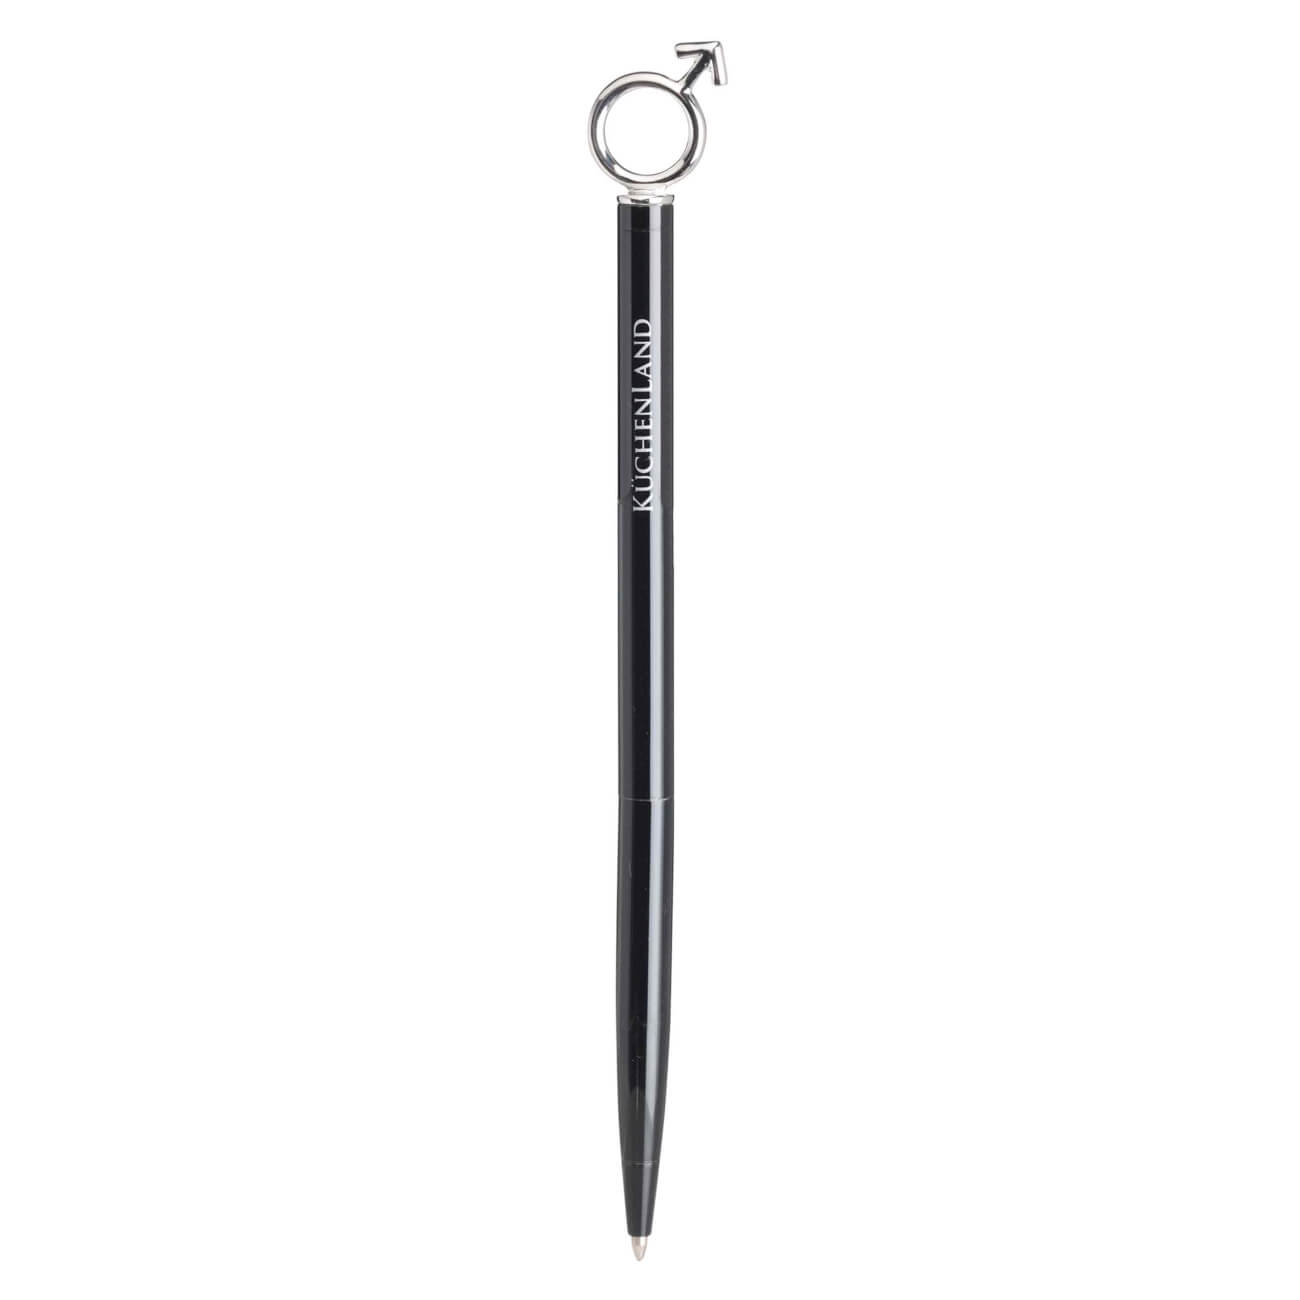 Ручка шариковая, 14 см, с фигуркой, металл, черная, Символ мужчины, Draw figure ручка шариковая brauberg model xl original черная 12 шт 0 7 мм 880404